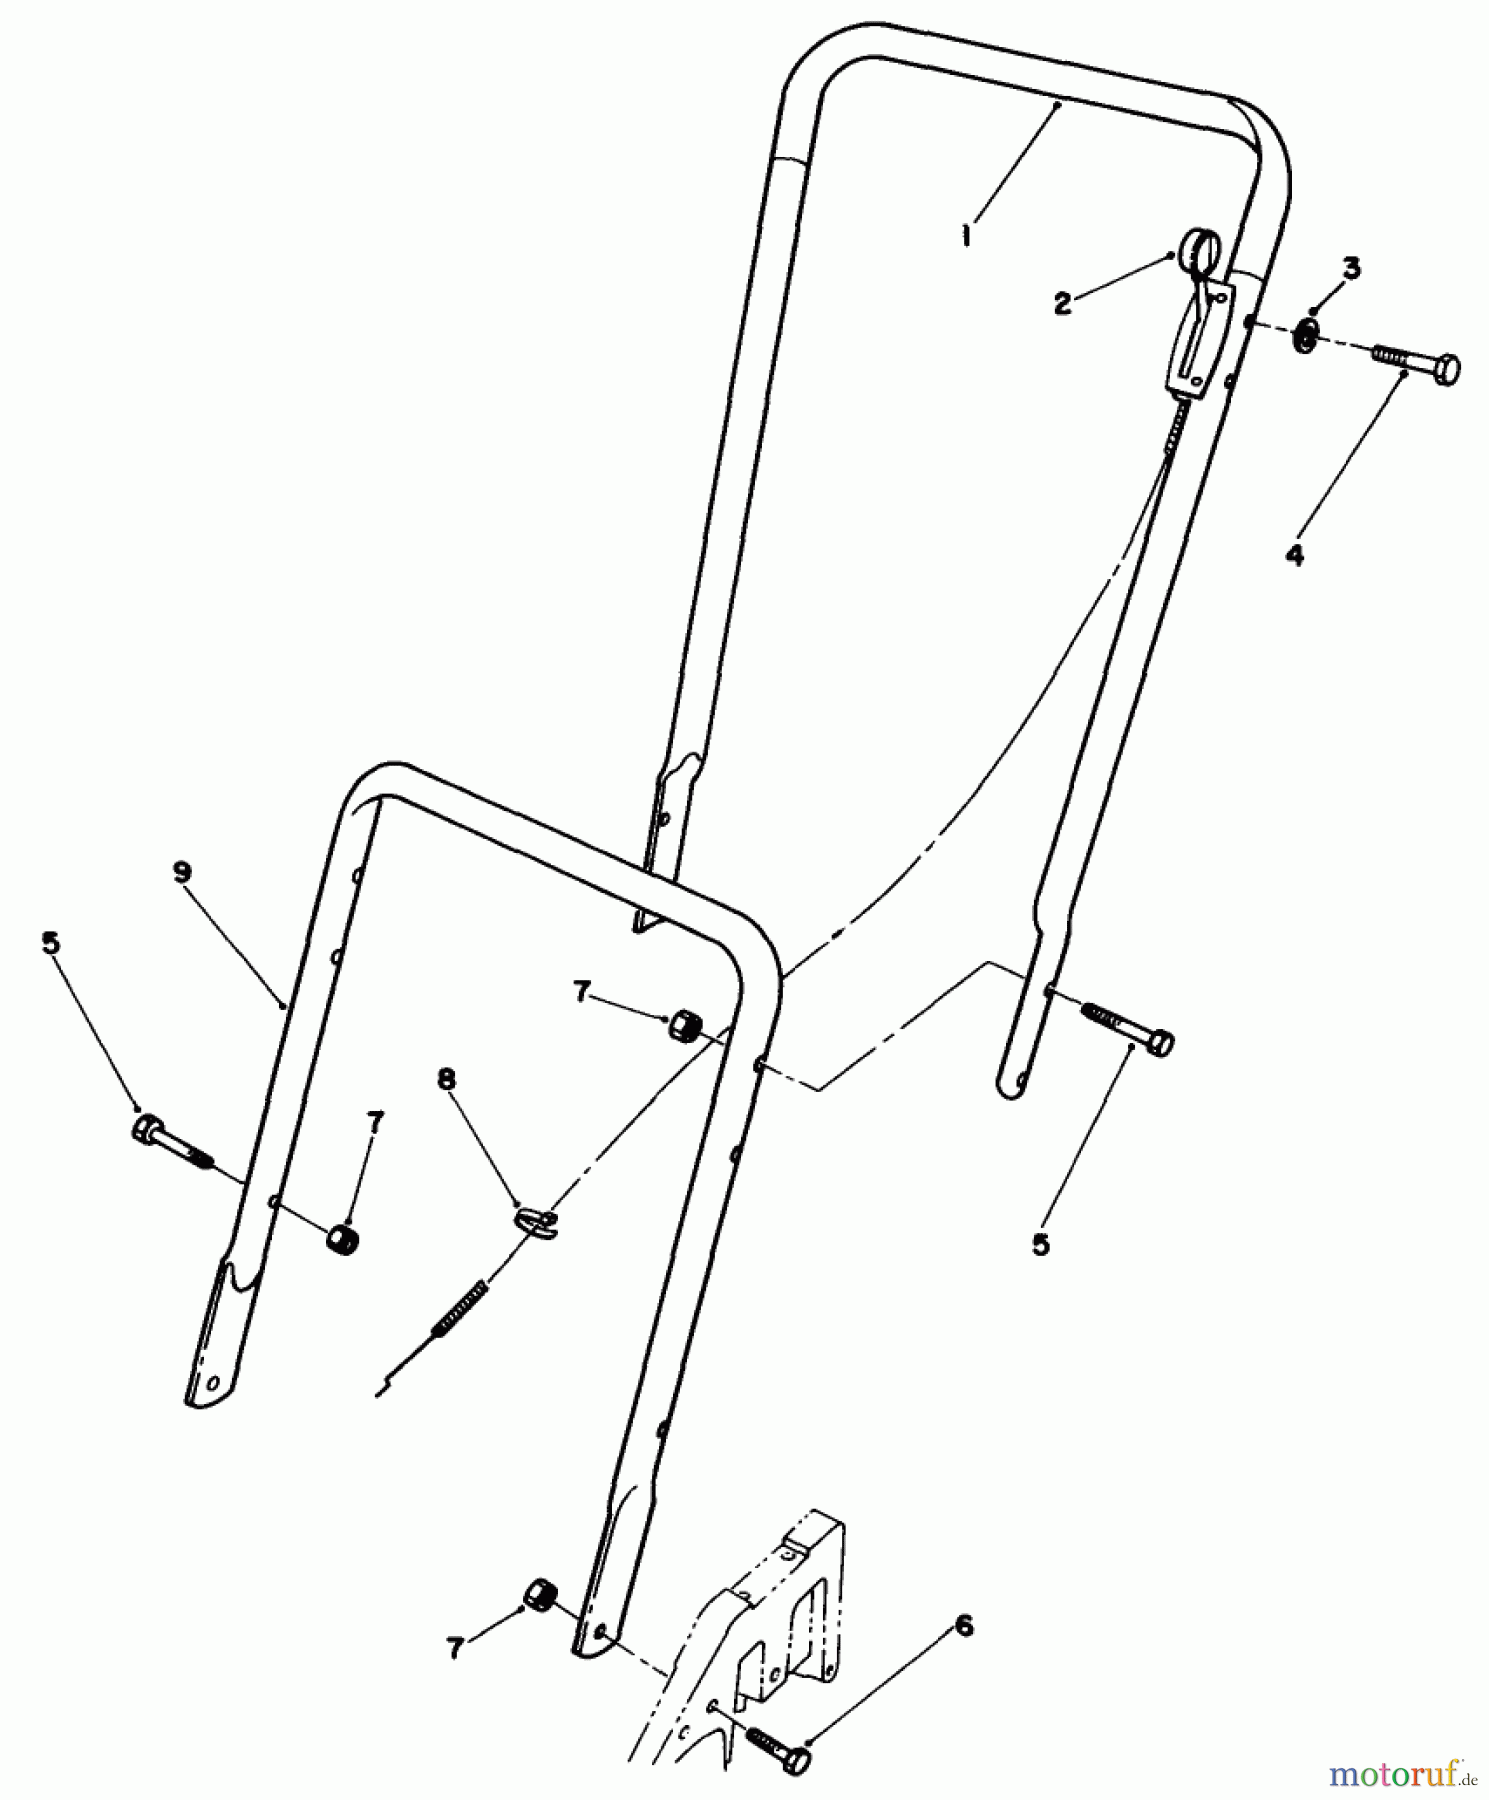  Toro Neu Mowers, Walk-Behind Seite 2 22025C - Toro Lawnmower, 1988 (8000001-8999999) HANDLE ASSEMBLY